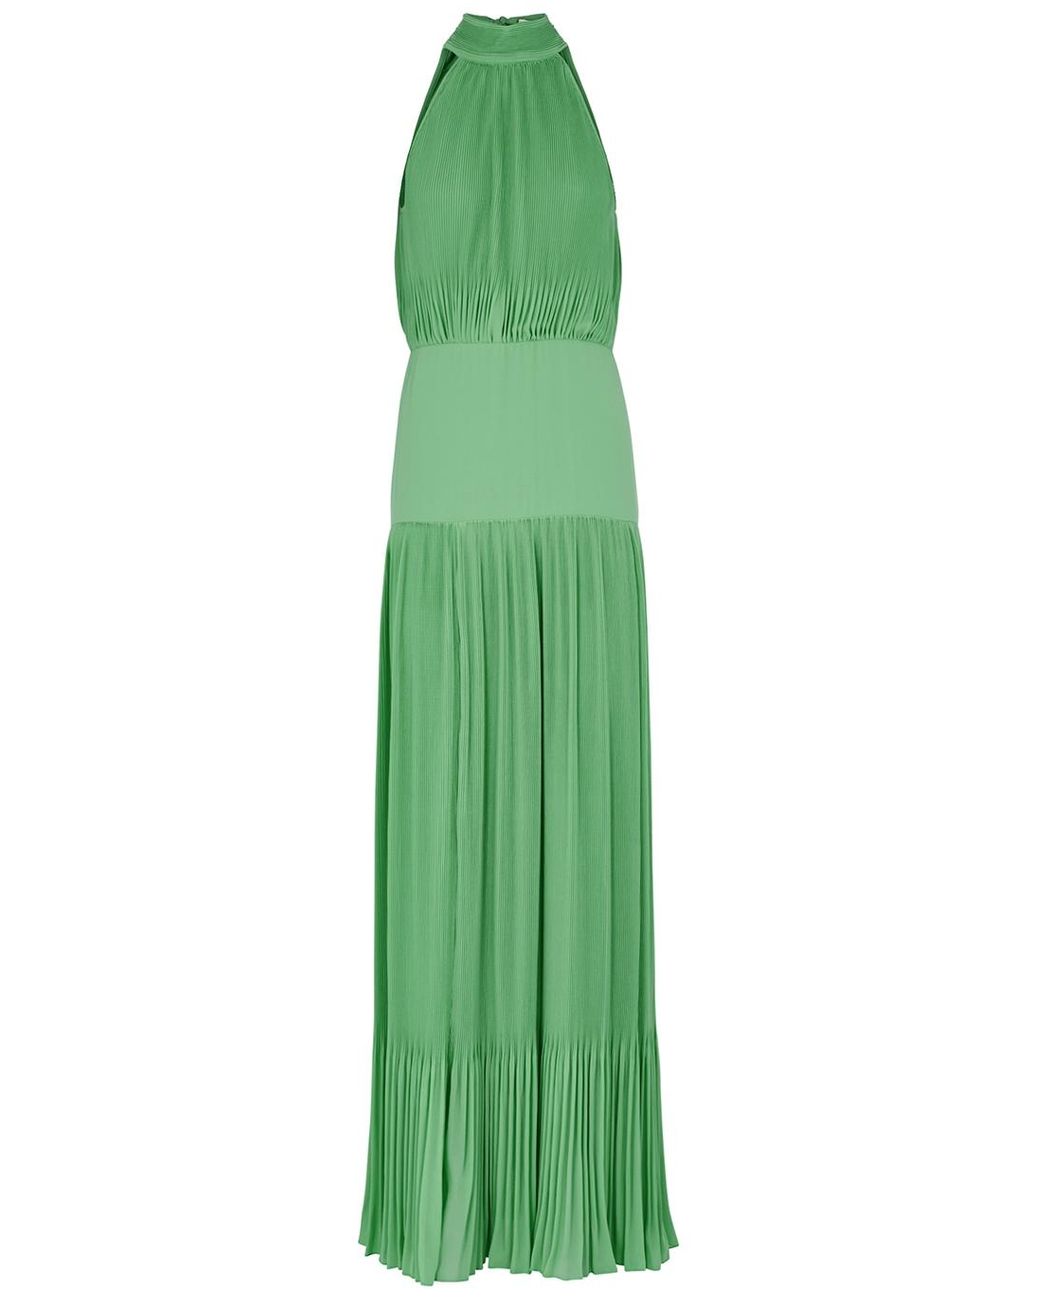 Veronica Beard Synthetic Lilliana Green Plissé Maxi Dress | Lyst